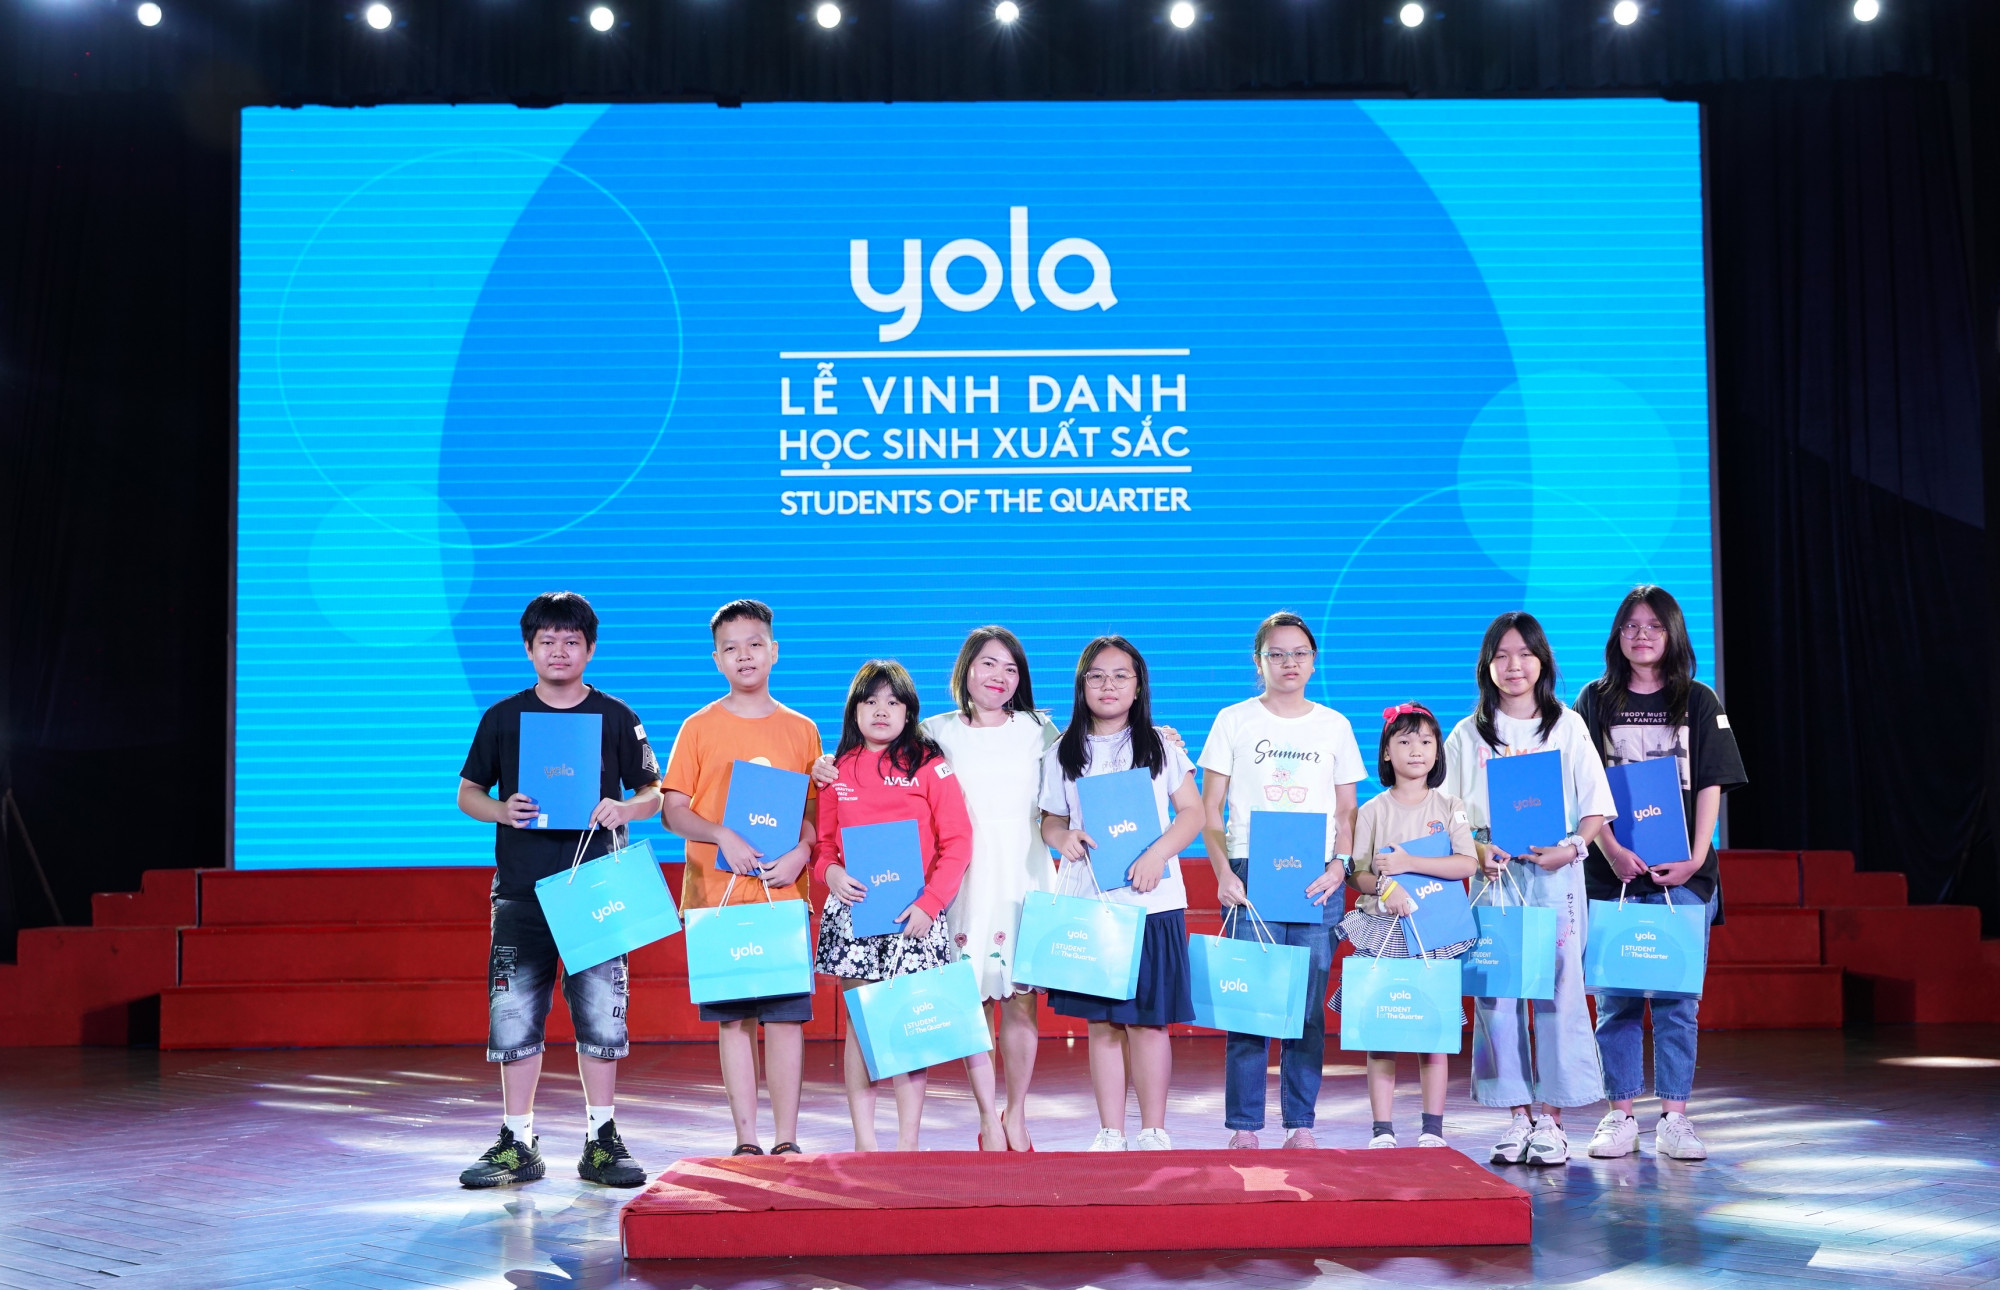 Các học viên xuất sắc hằng quý được Yola vinh danh nhằm ghi nhận những nỗ lực của của các em - Ảnh: Yola